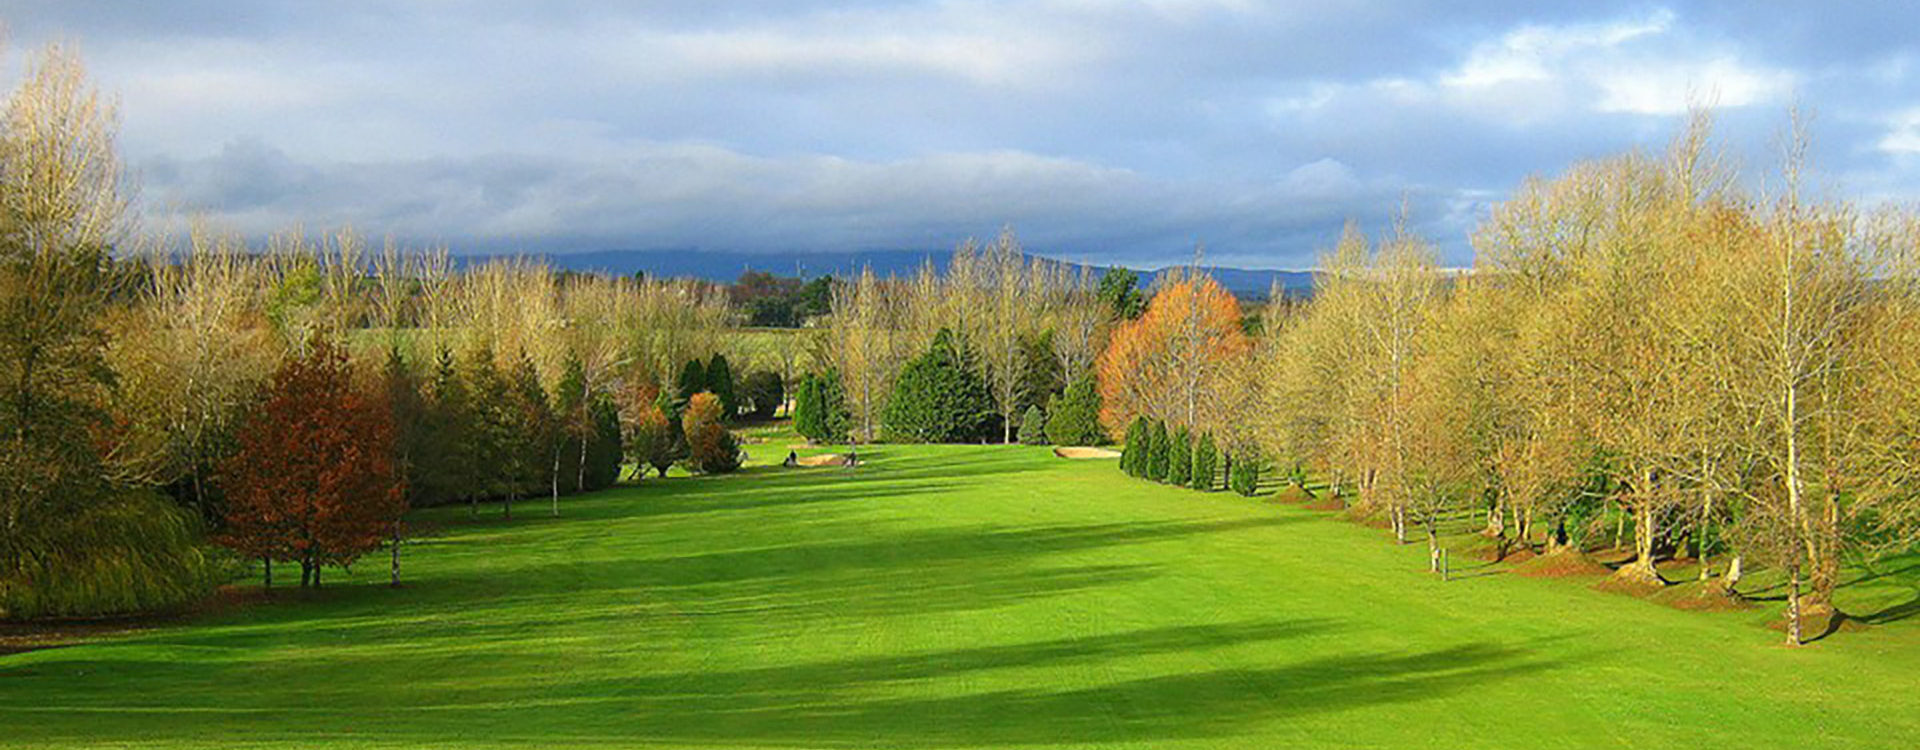 Enniscorthy Golf Club - Club Choice Ireland